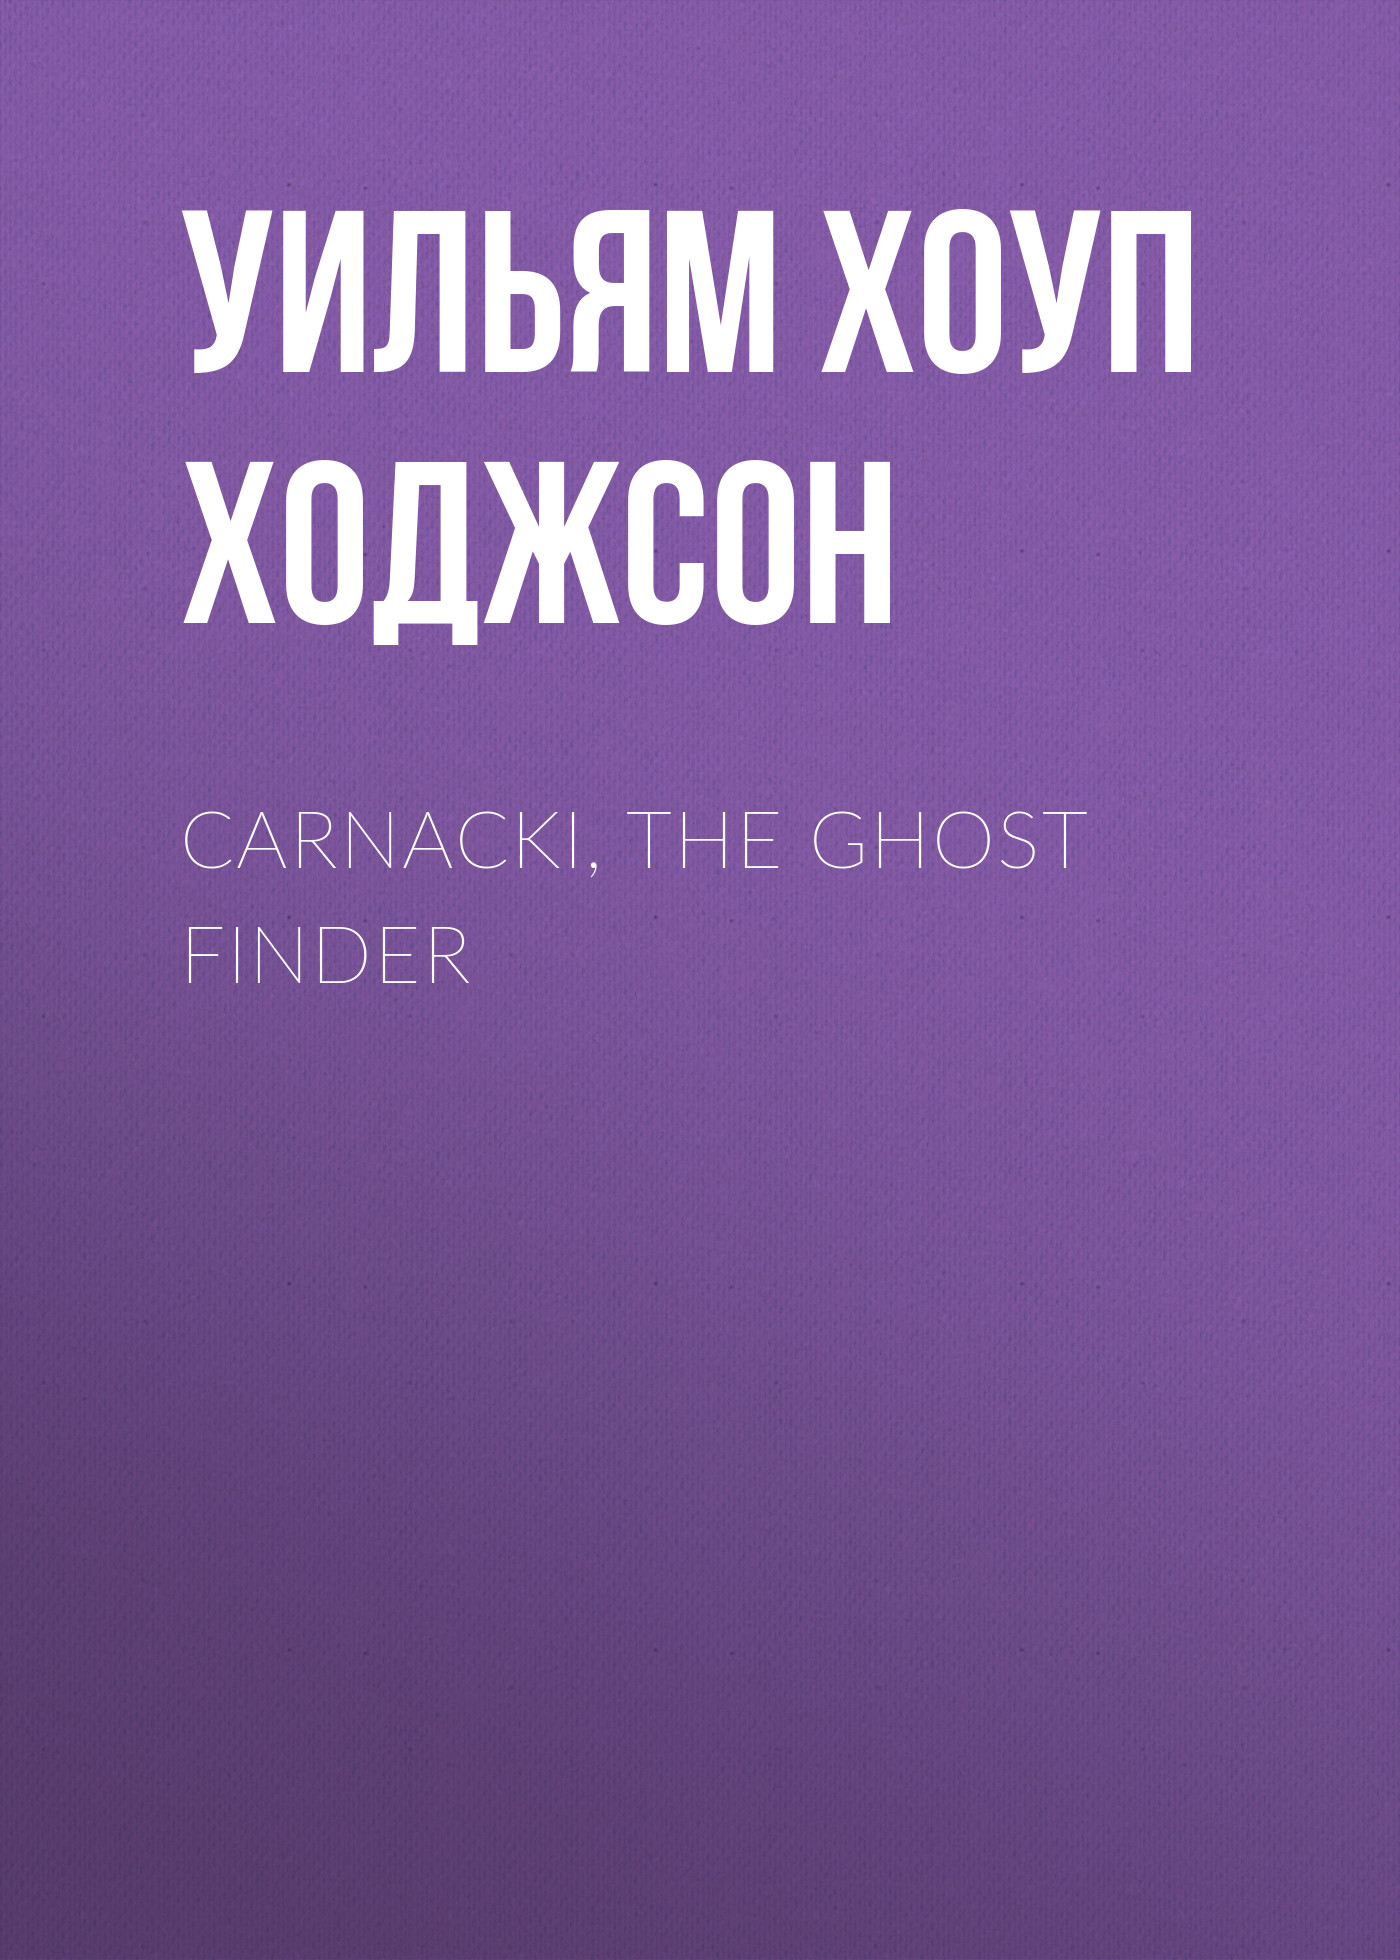 Книга Carnacki, the Ghost Finder из серии , созданная Уильям Хоуп Ходжсон, может относится к жанру Зарубежная фантастика, Ужасы и Мистика, Зарубежная старинная литература, Зарубежная классика. Стоимость электронной книги Carnacki, the Ghost Finder с идентификатором 34840766 составляет 0 руб.